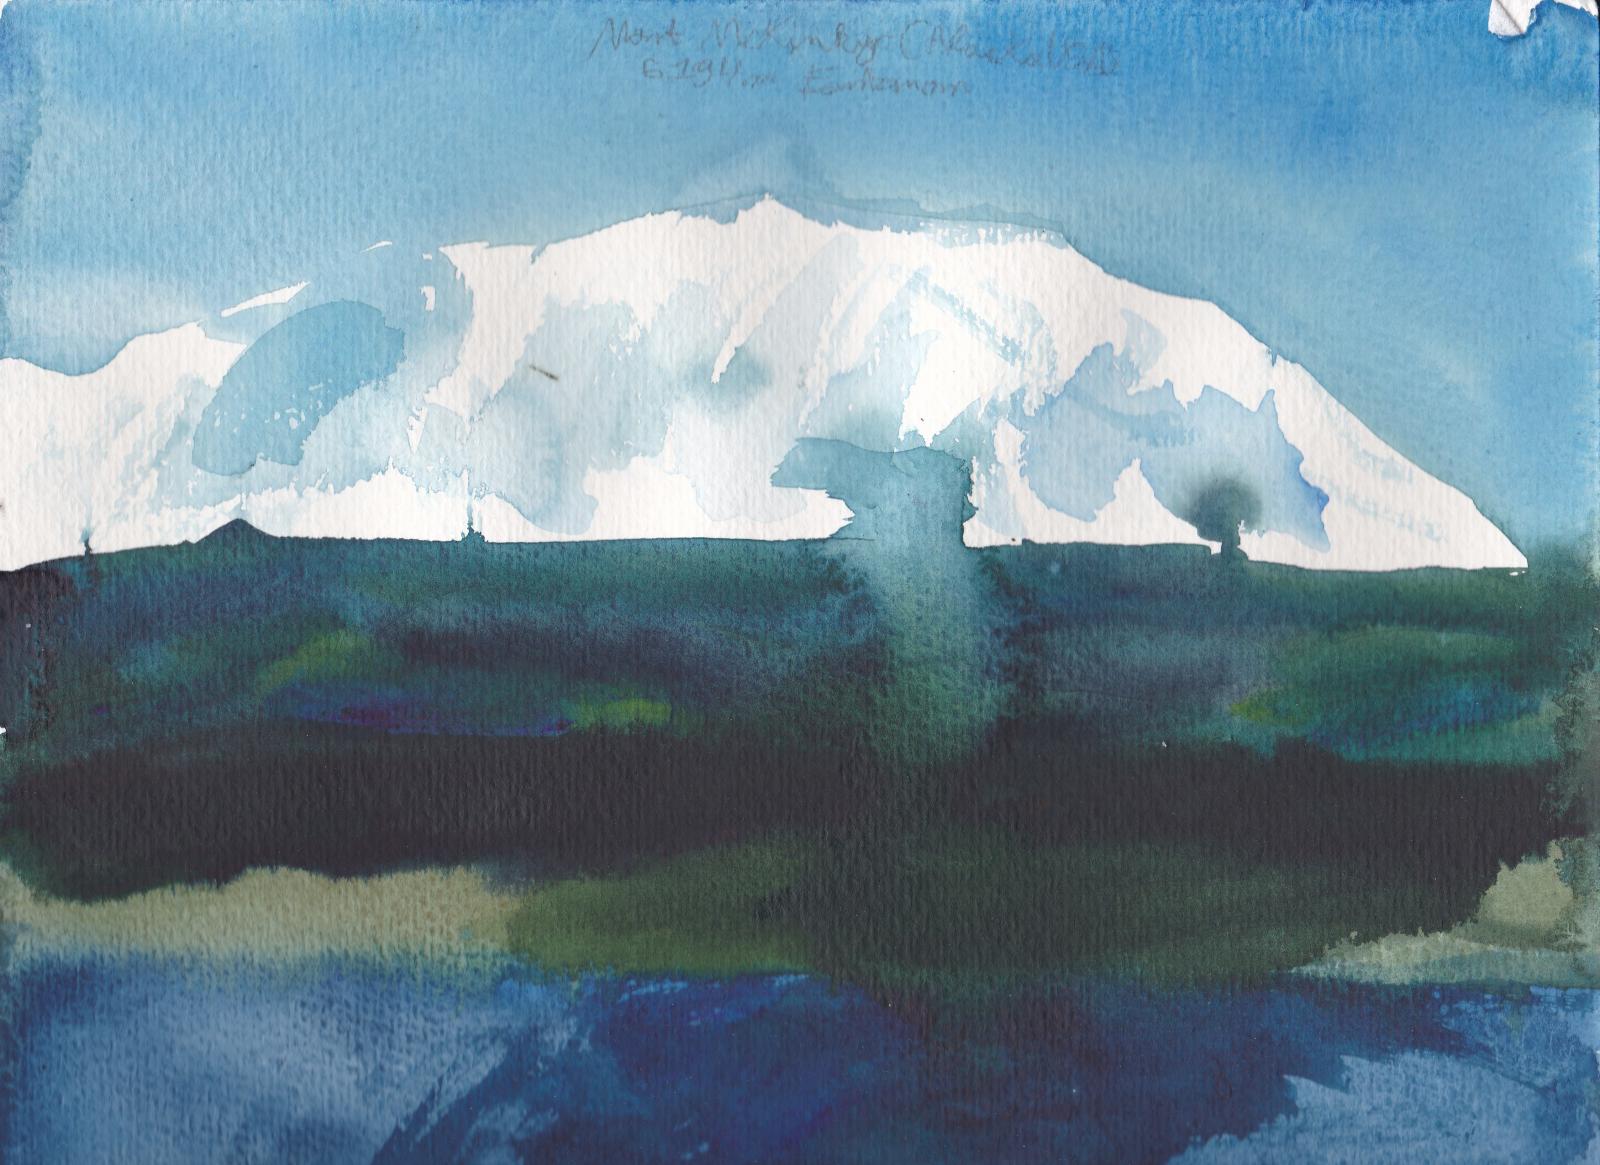 Le Mont McKinley, point culminant de l\'Amrique du Nord  6194m d\'altitude, et ses gros glaciers puis forets et lacs d\'Alaska.